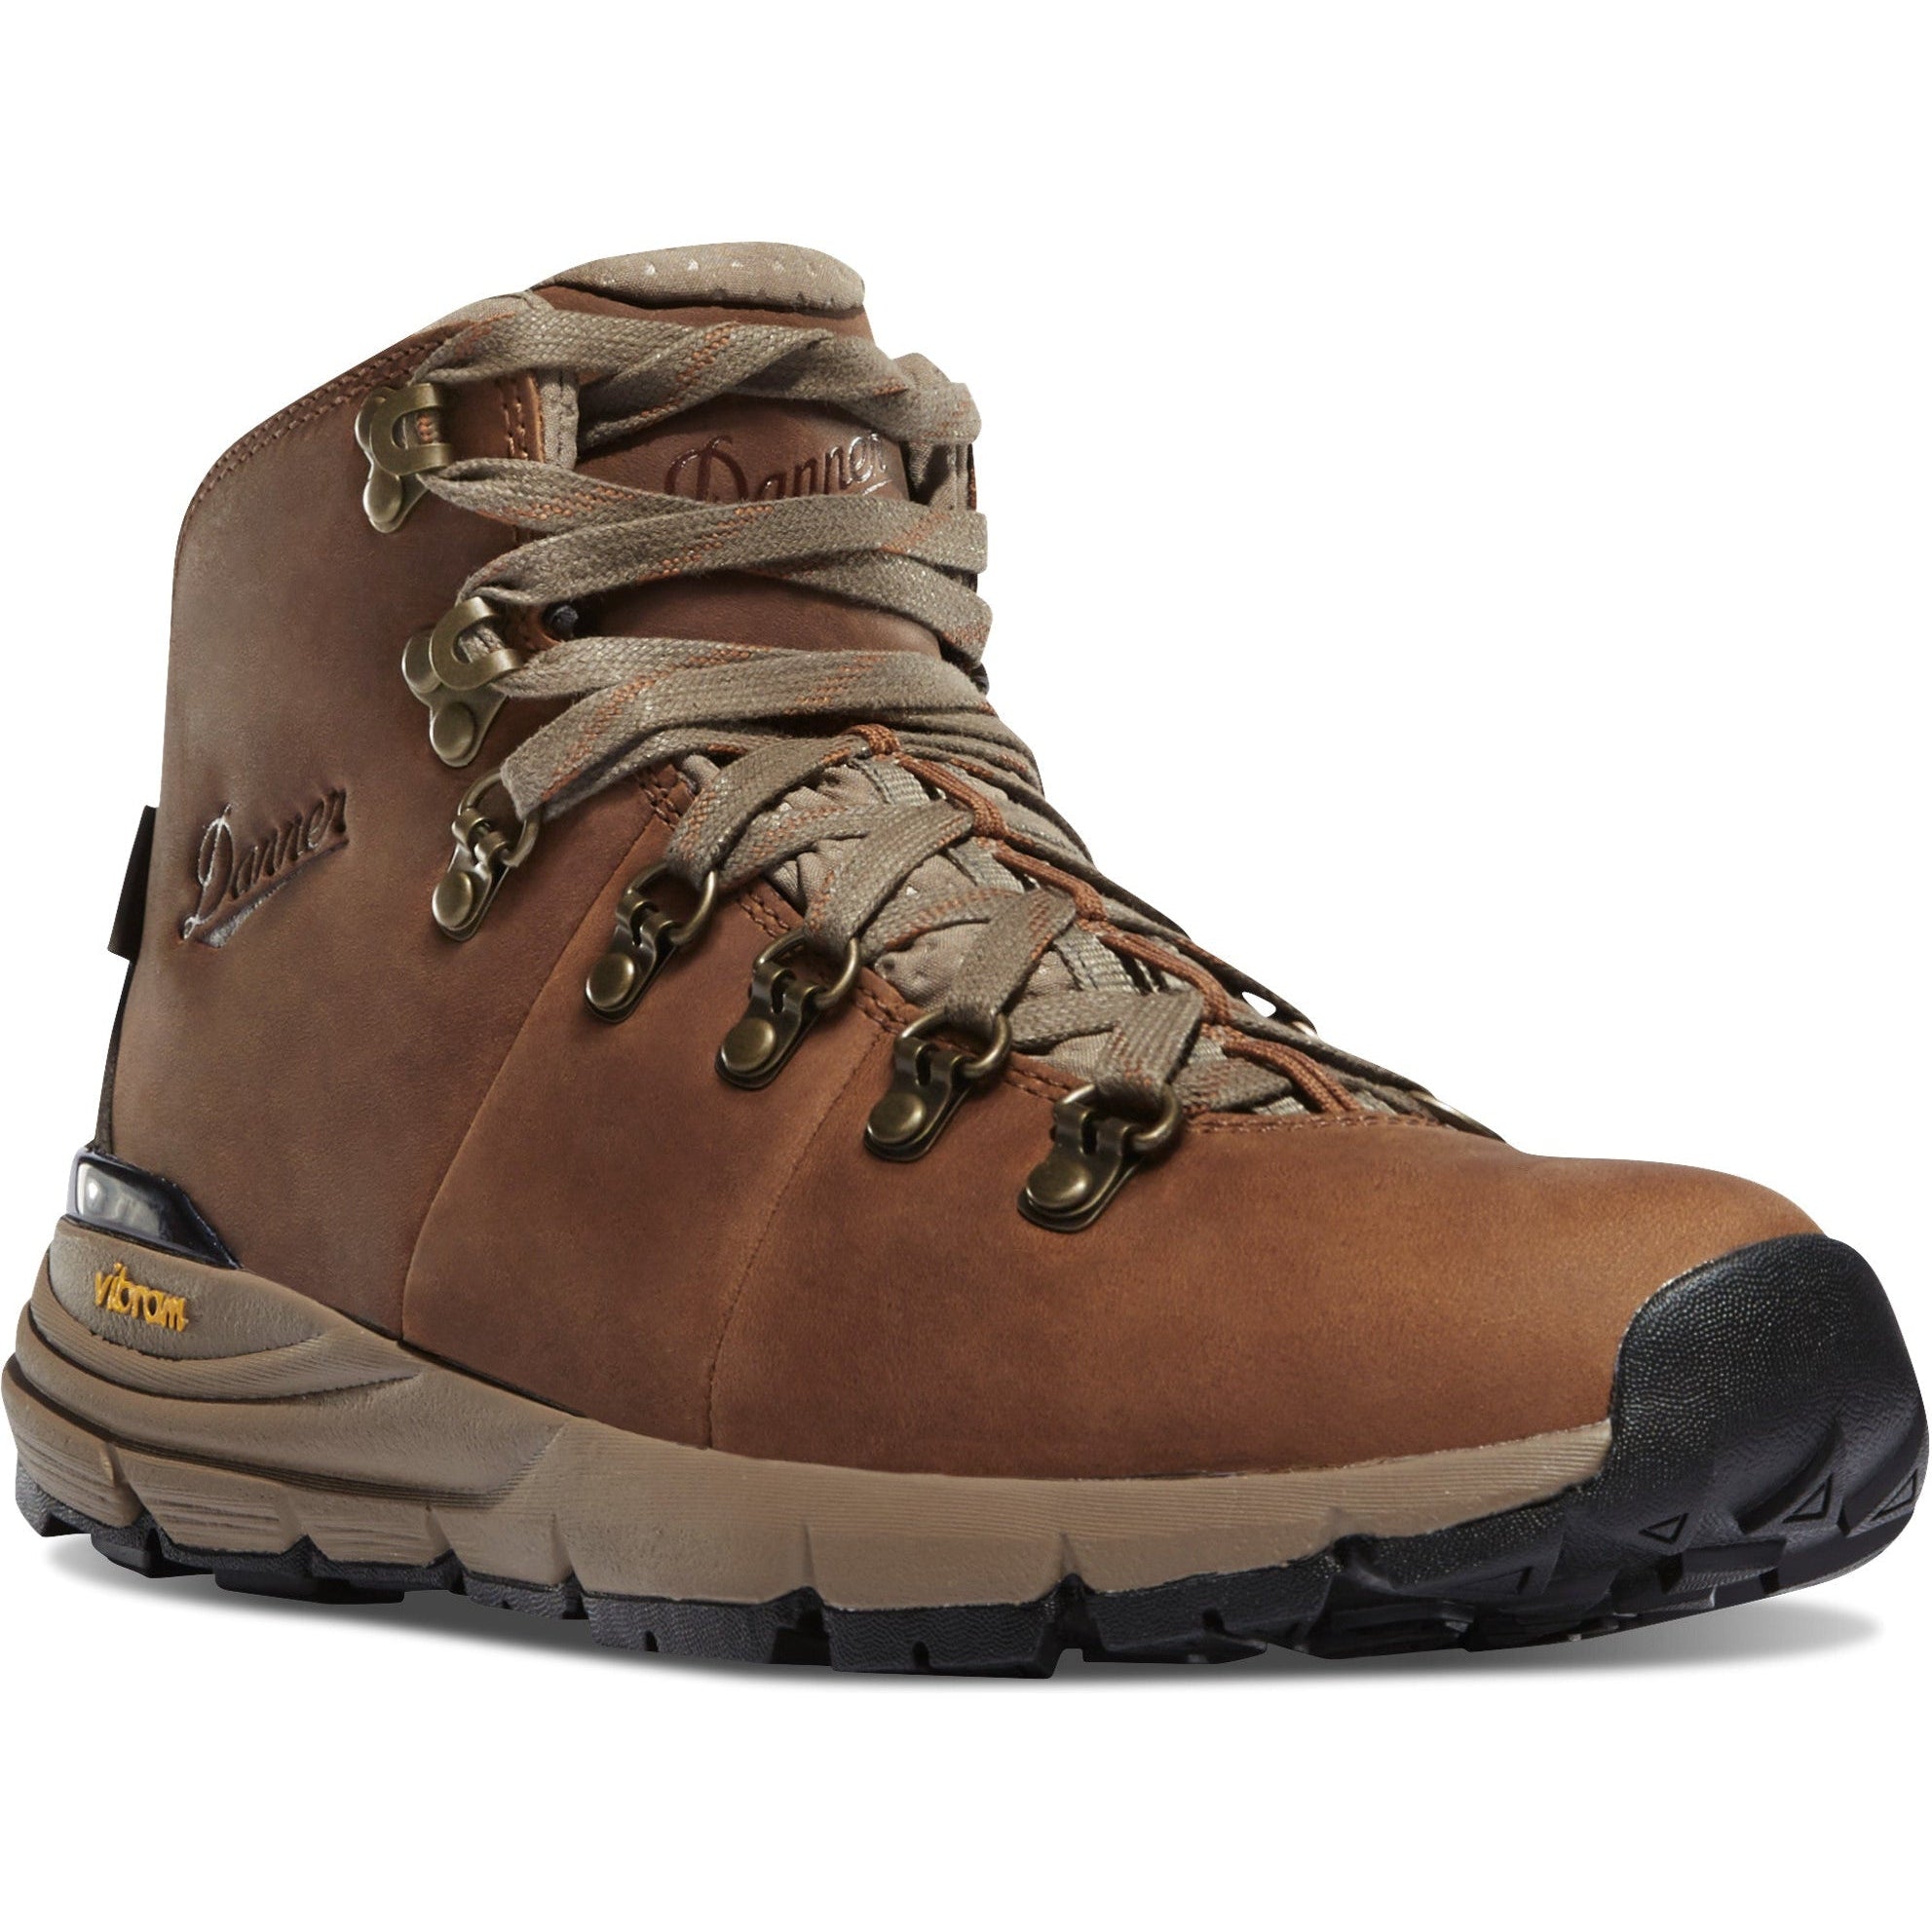 Danner Women's Mountain 600 4.5" WP Hiking Boot - Brown - 62251 5 / Medium / Brown - Overlook Boots